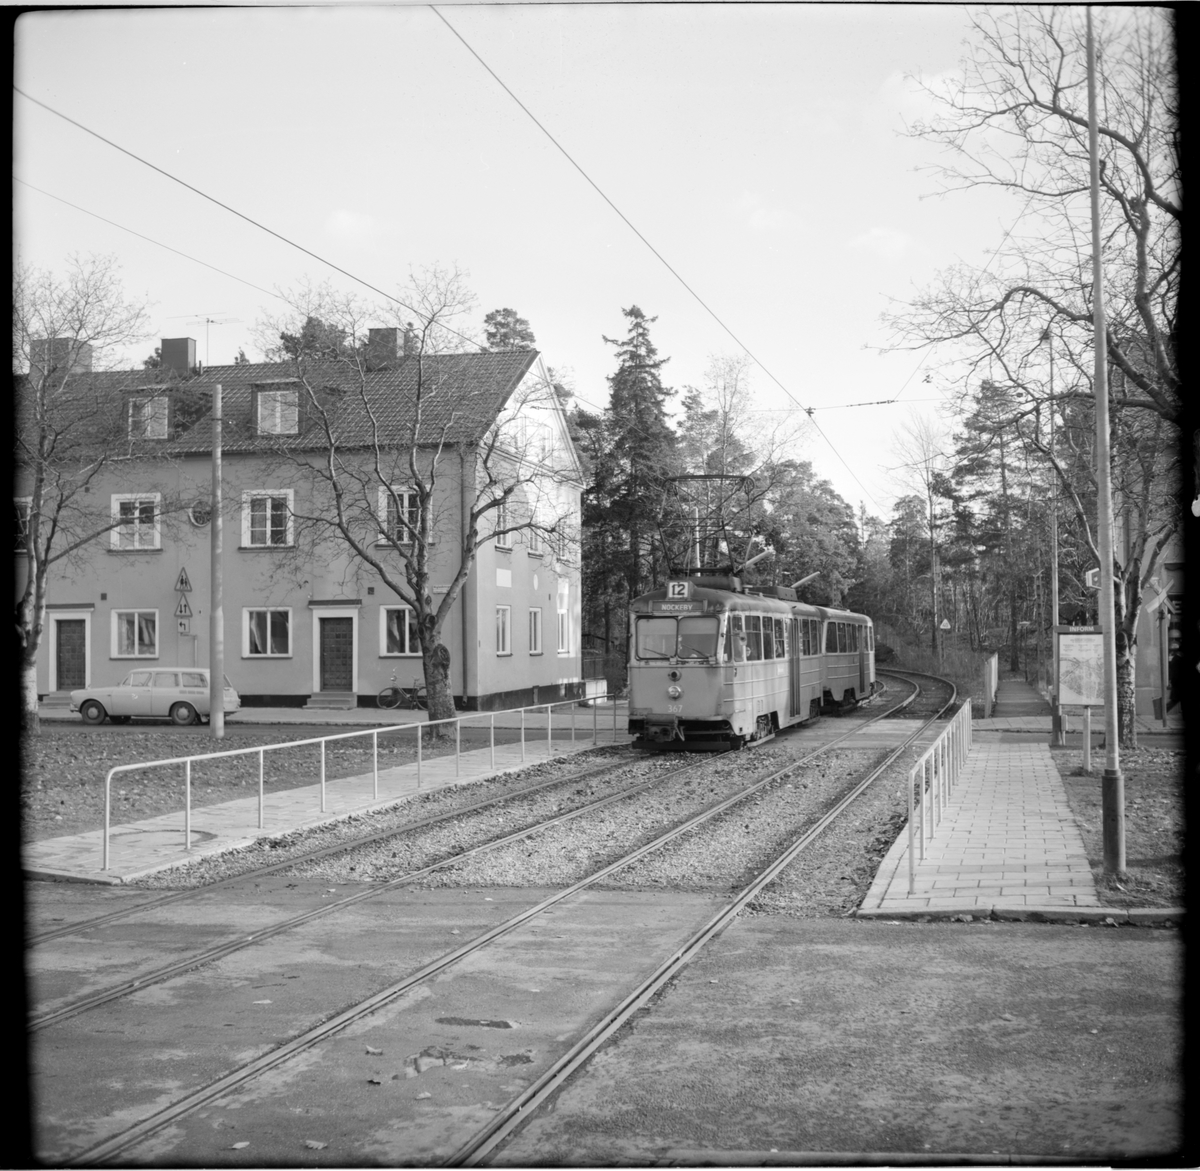 Aktiebolaget Stockholms Spårvägar, SS A24 367 "ängbyvagn" linje 12 Nockeby vid Höglandstorget. Vagn mot Nockeby.